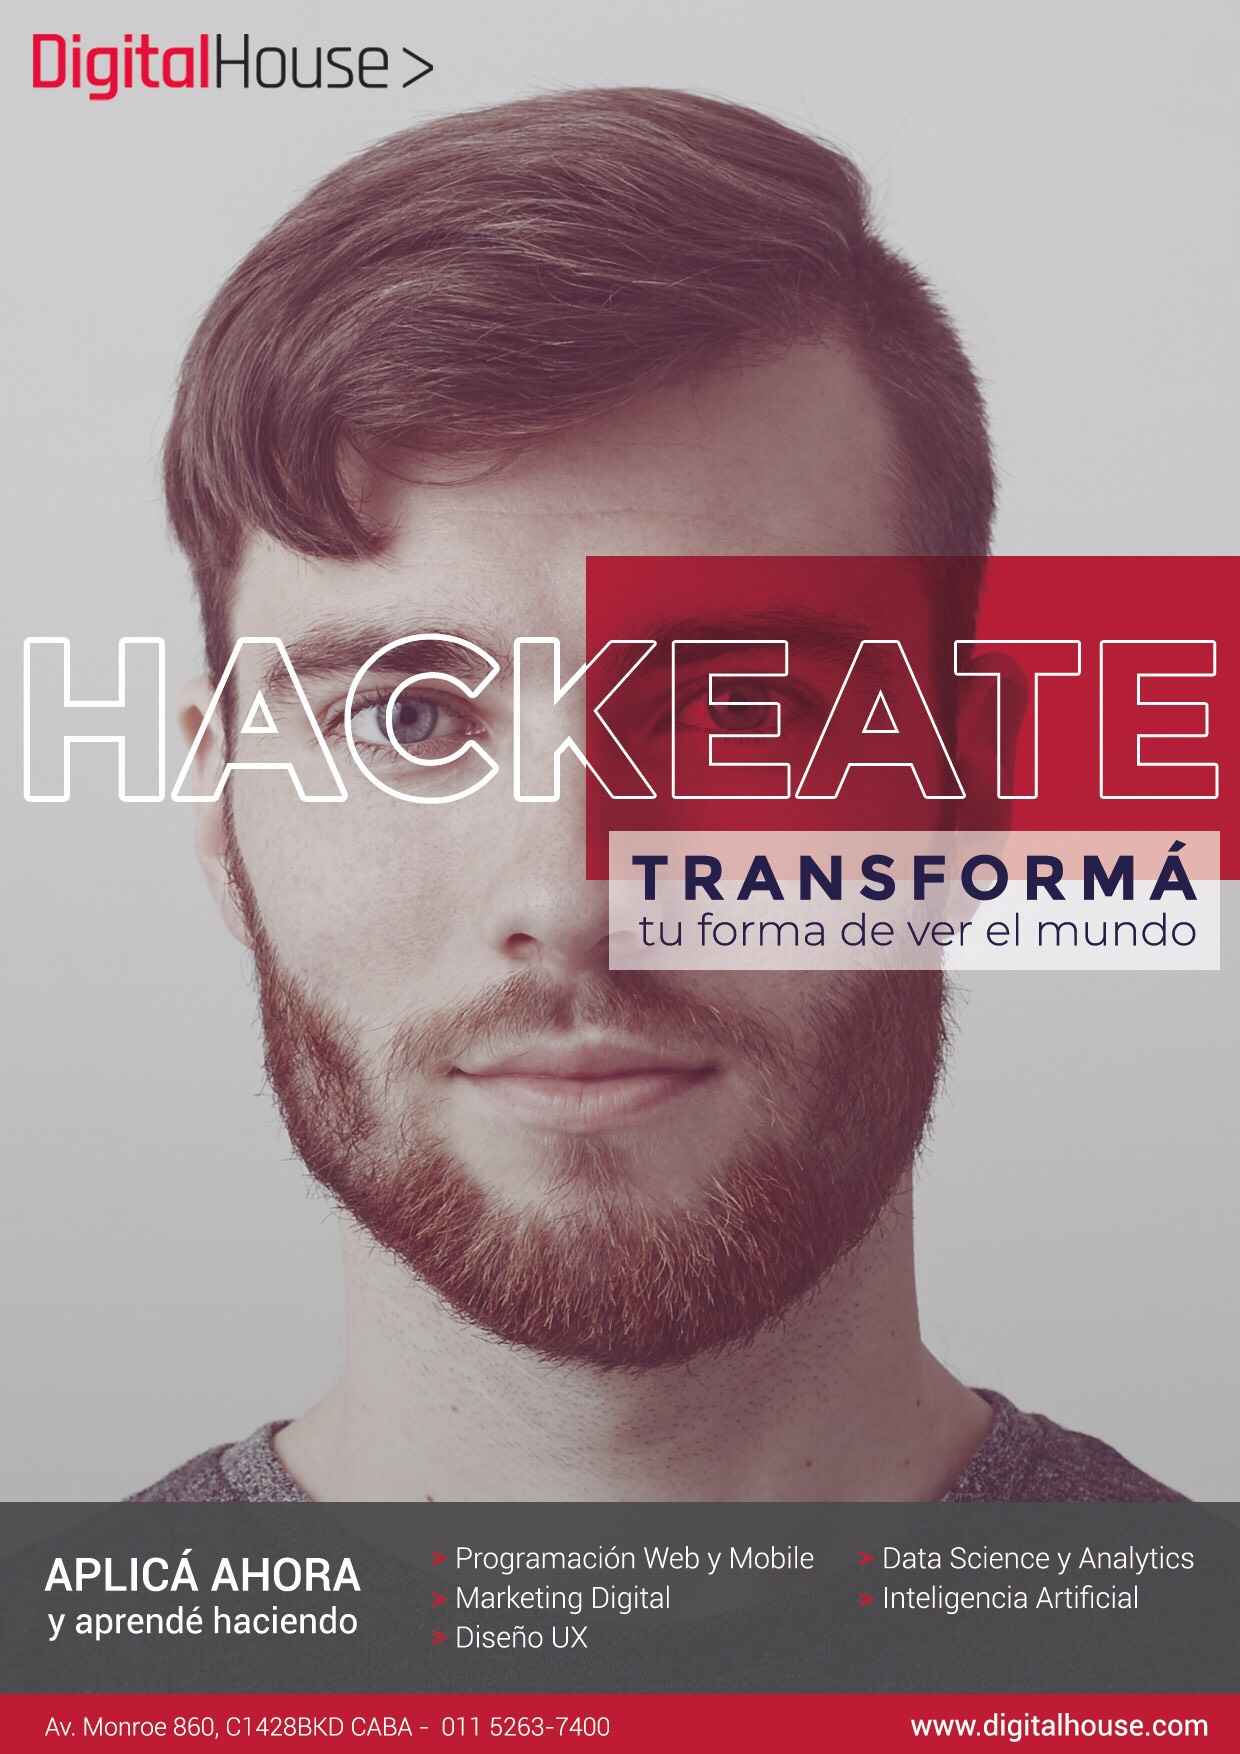 Portada de “Hackeate”, la nueva campaña de WebAr Interactive para Digital House